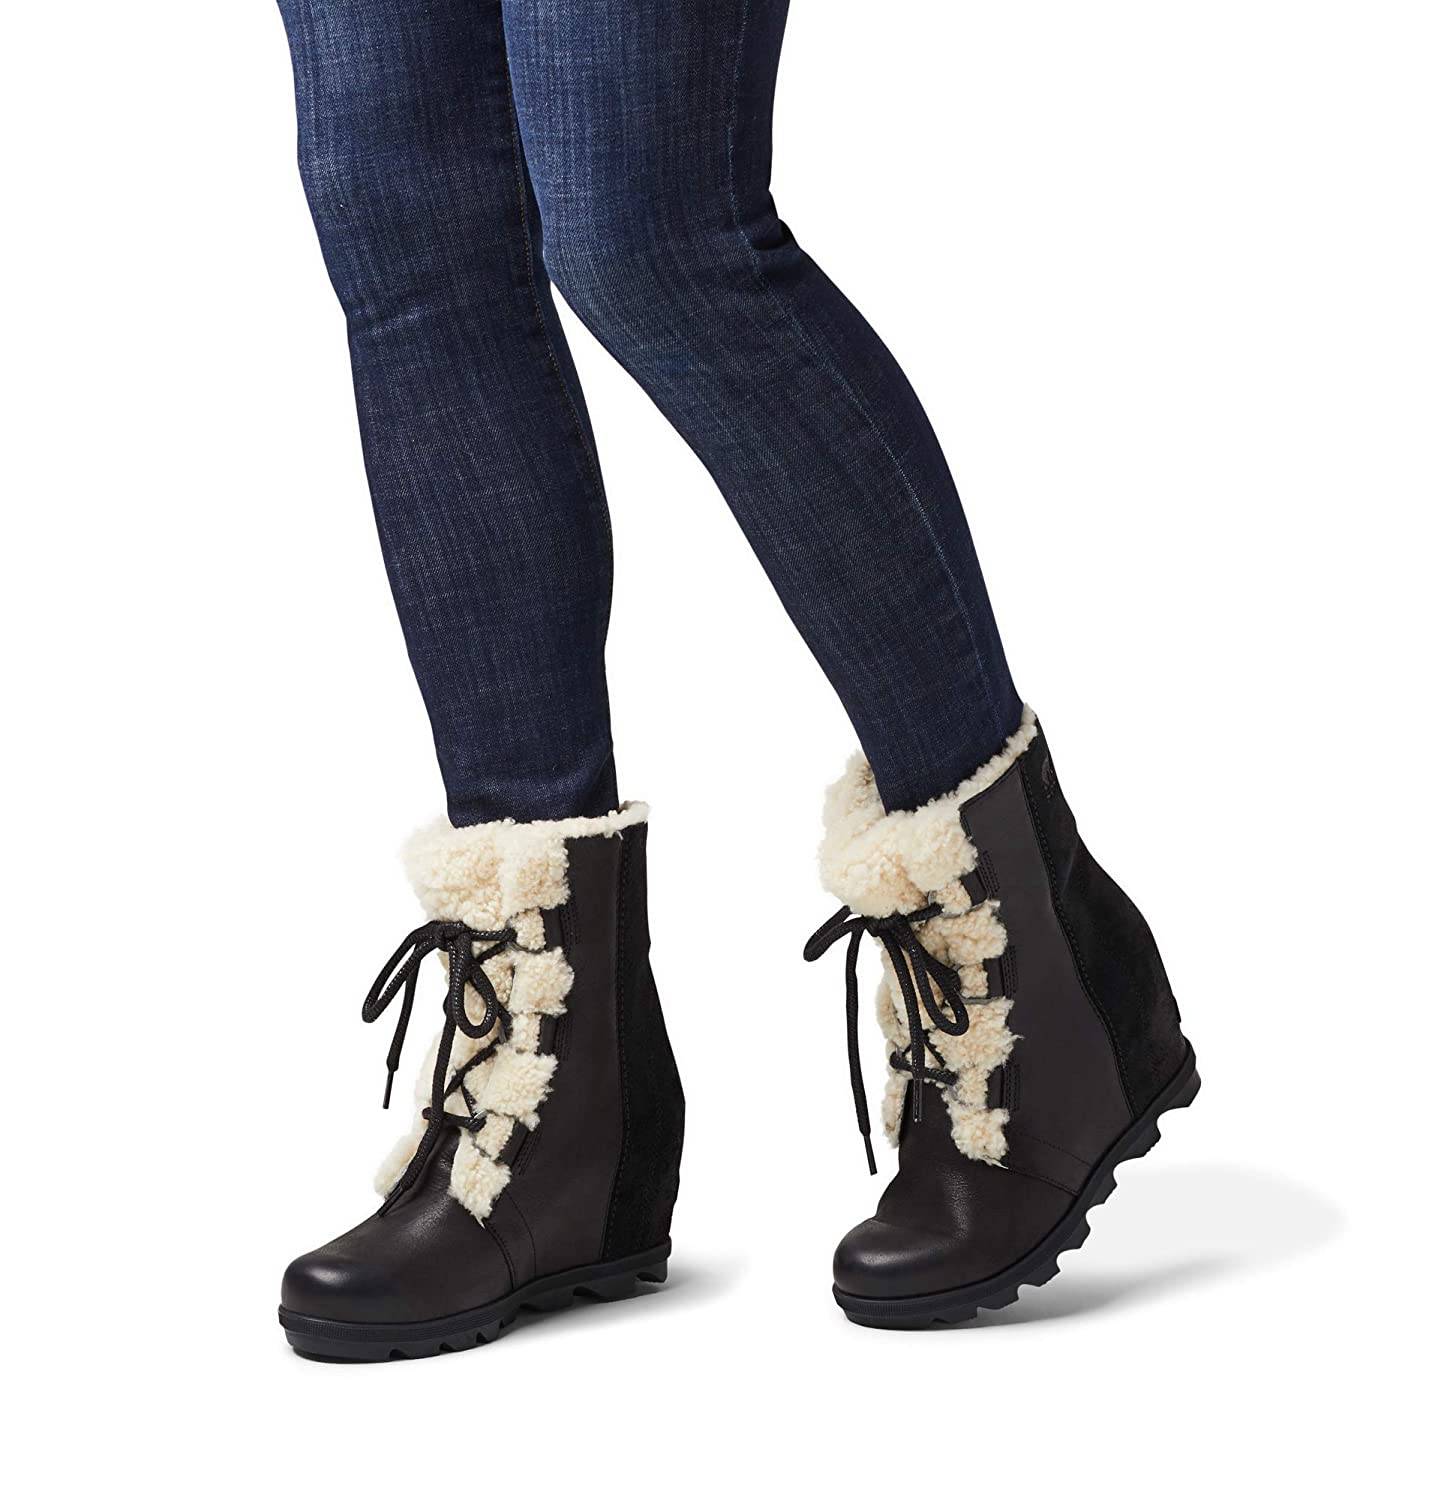 sorel women's joan of arctic wedge ii lux boots